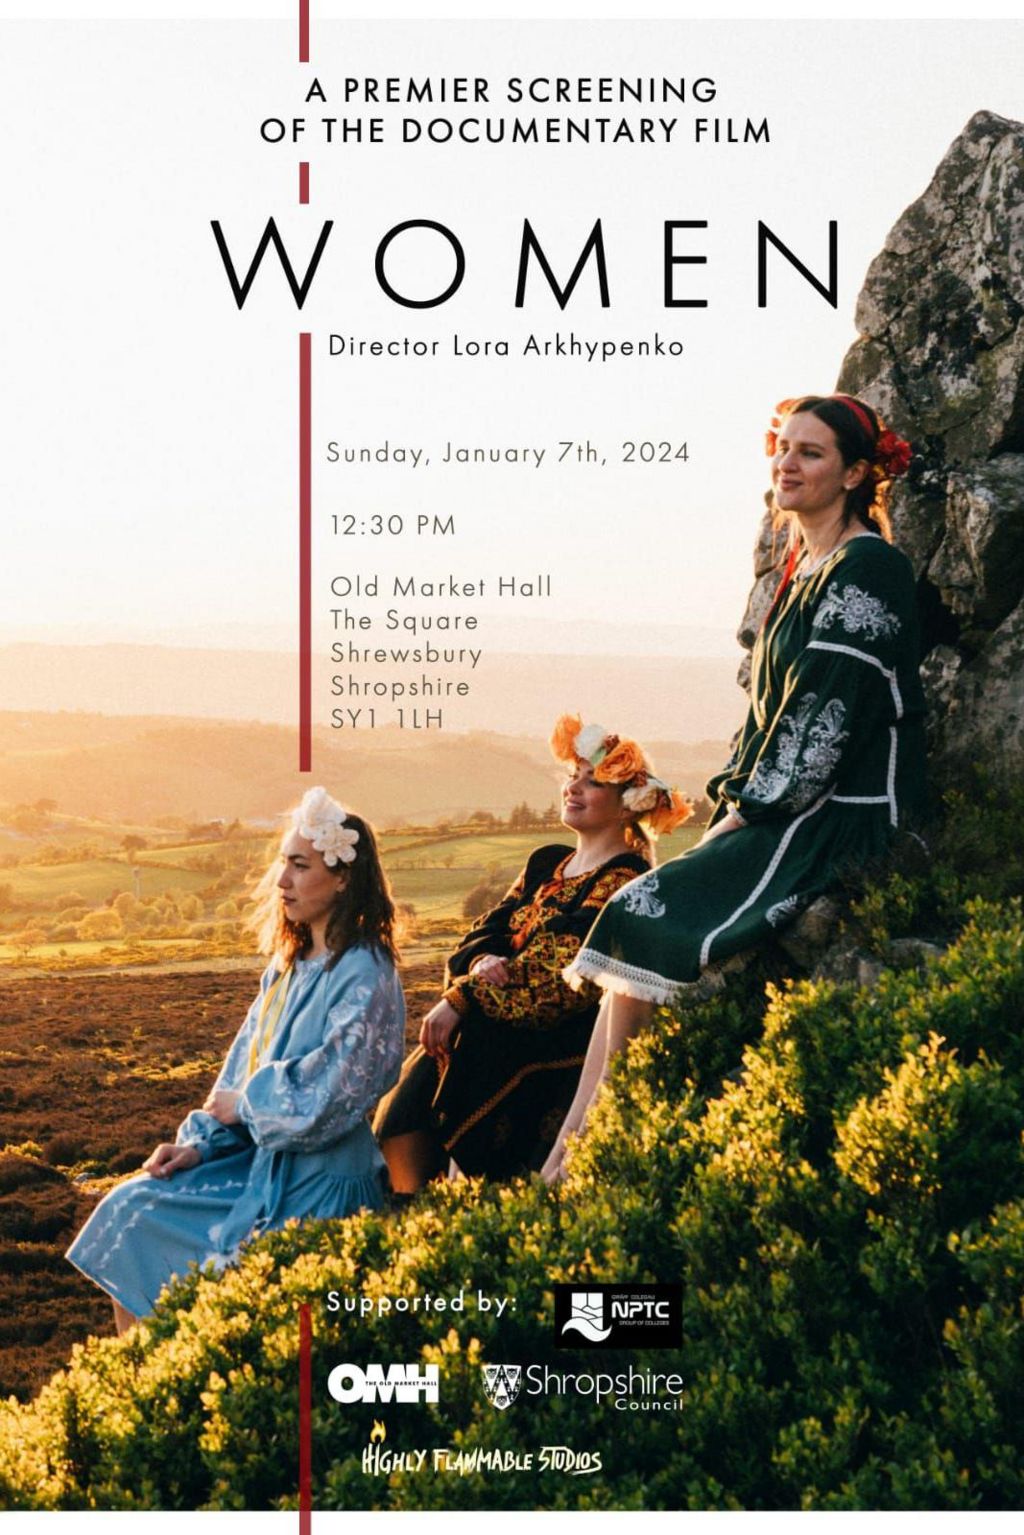 Film poster for Lora Arkhypenko's film Women